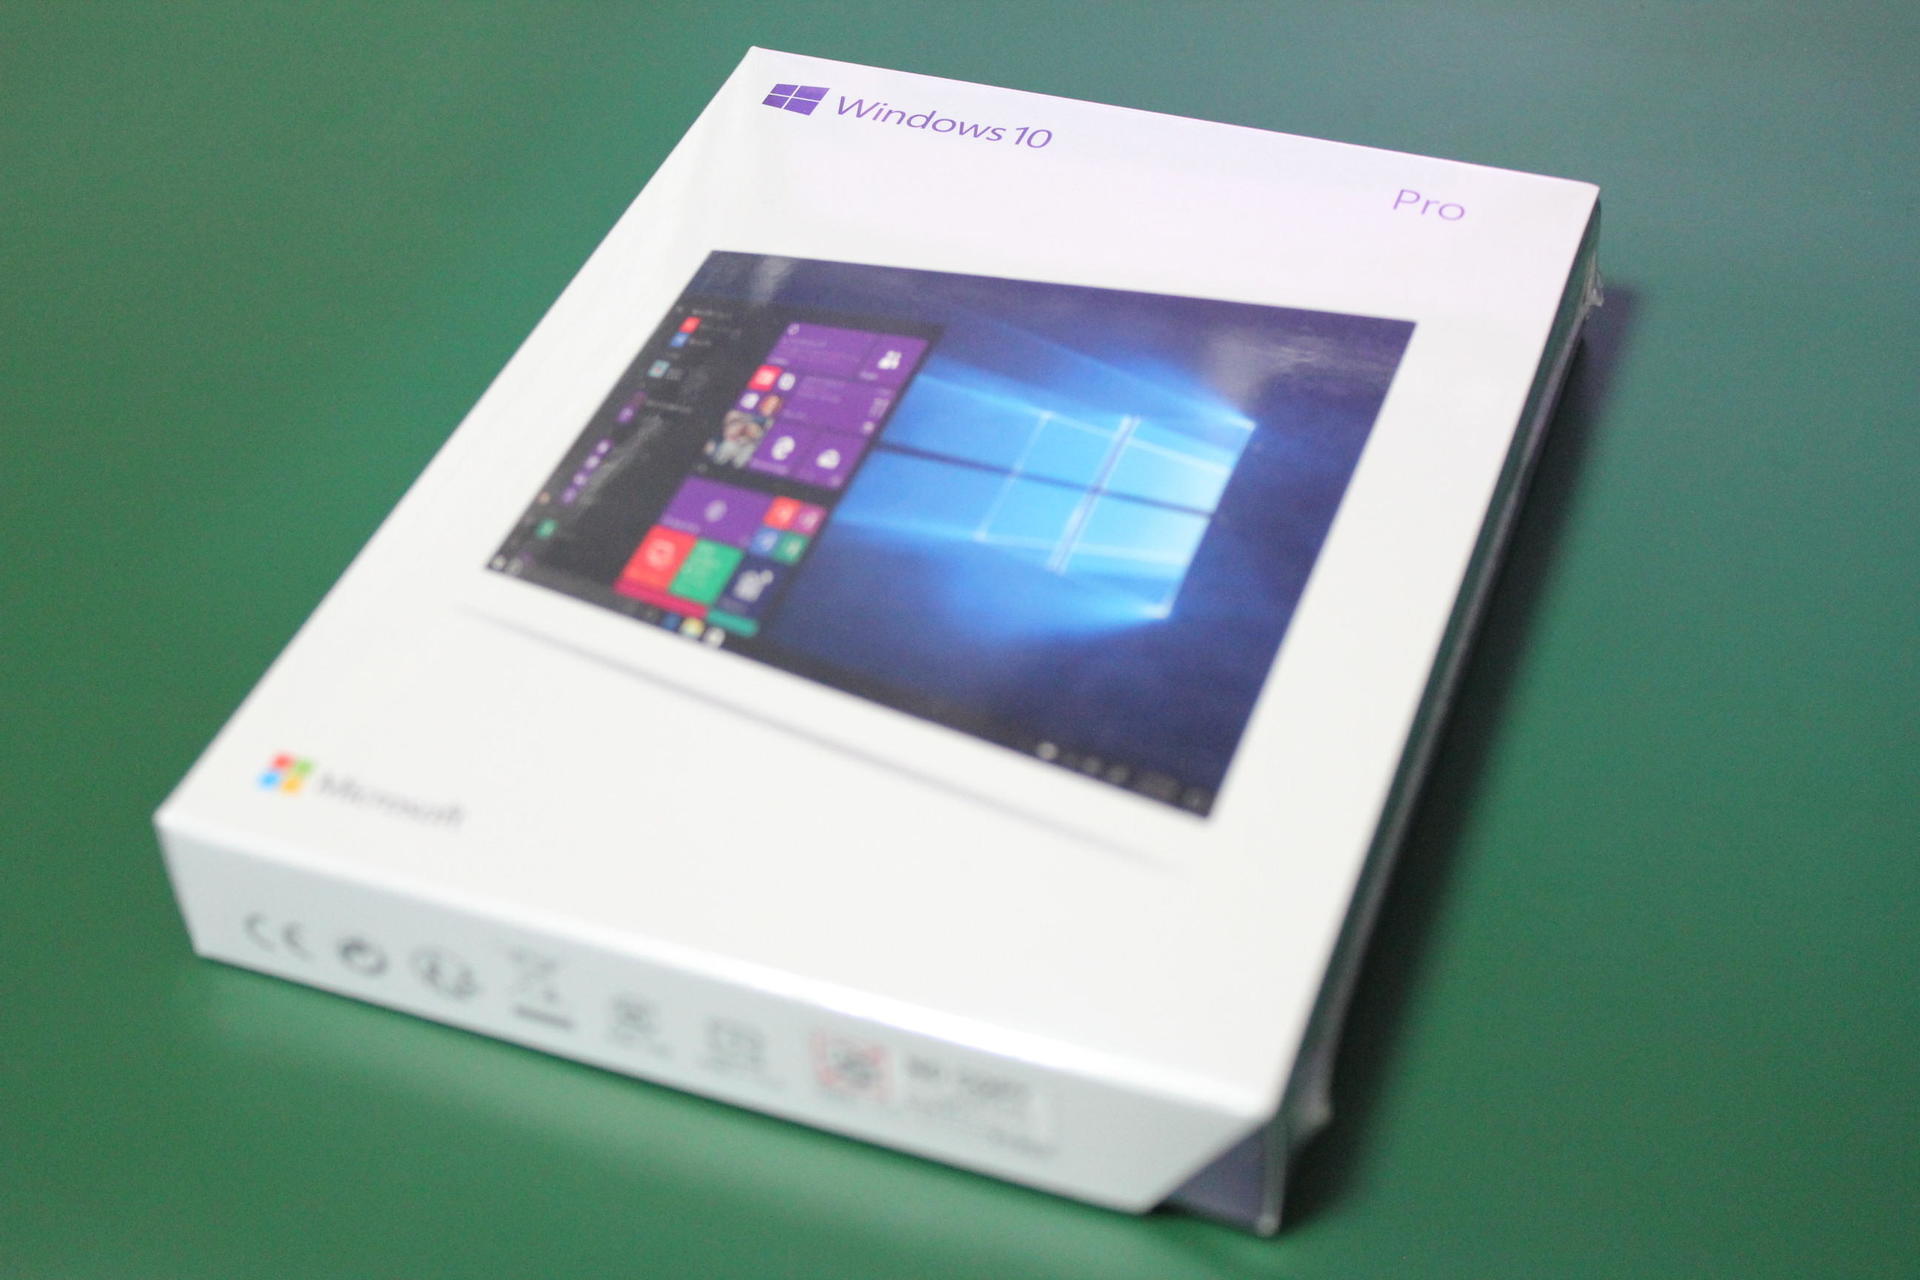 Windows 10 Proのパッケージ版を買ってみました。: 青い空のブログ